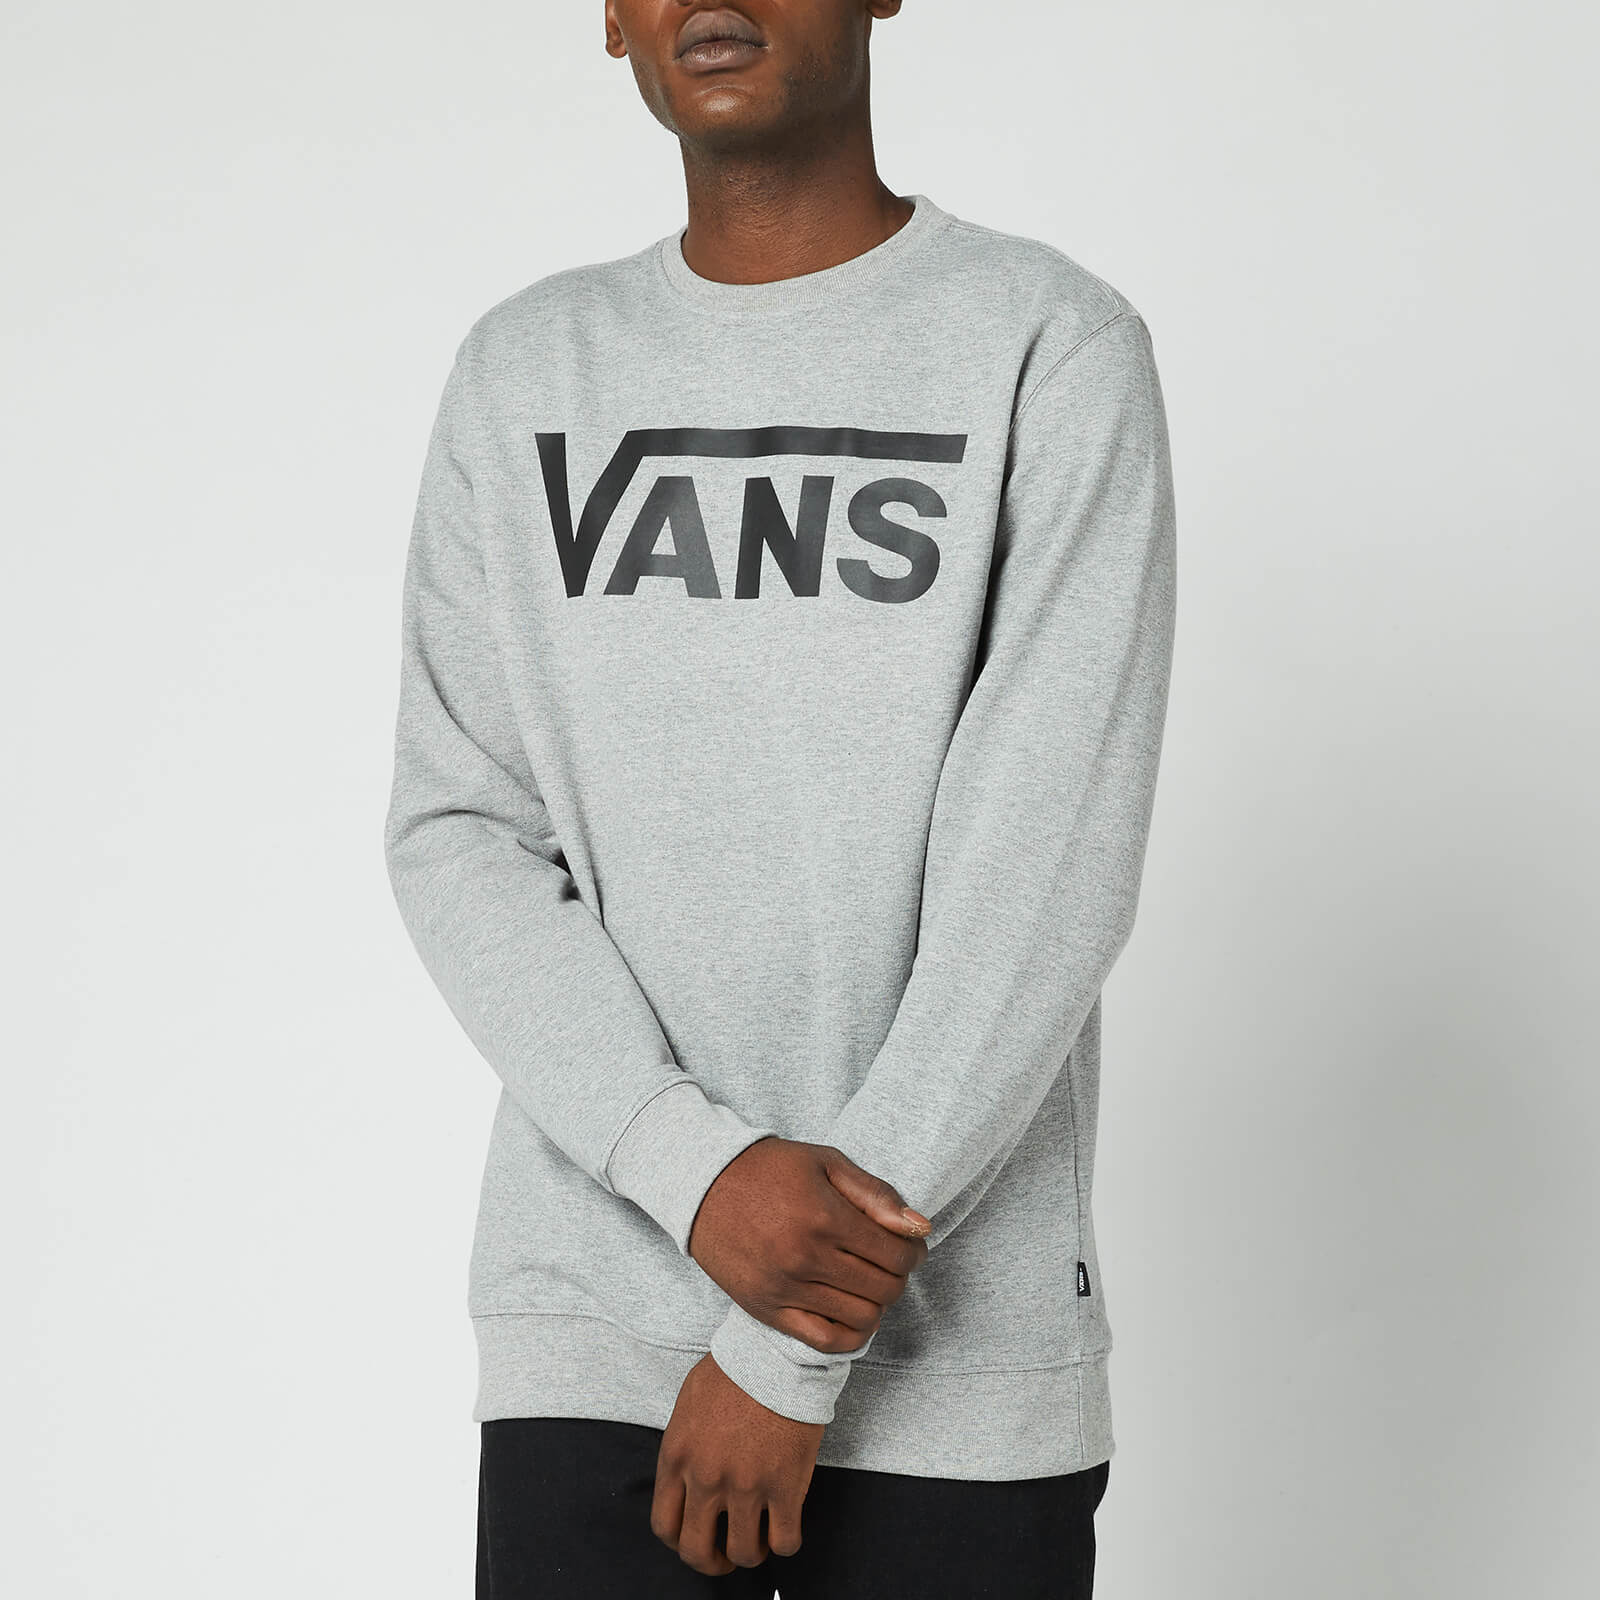 Vans Men's Classic Crewneck Sweatshirt - Cement Heather/Black - L von Vans